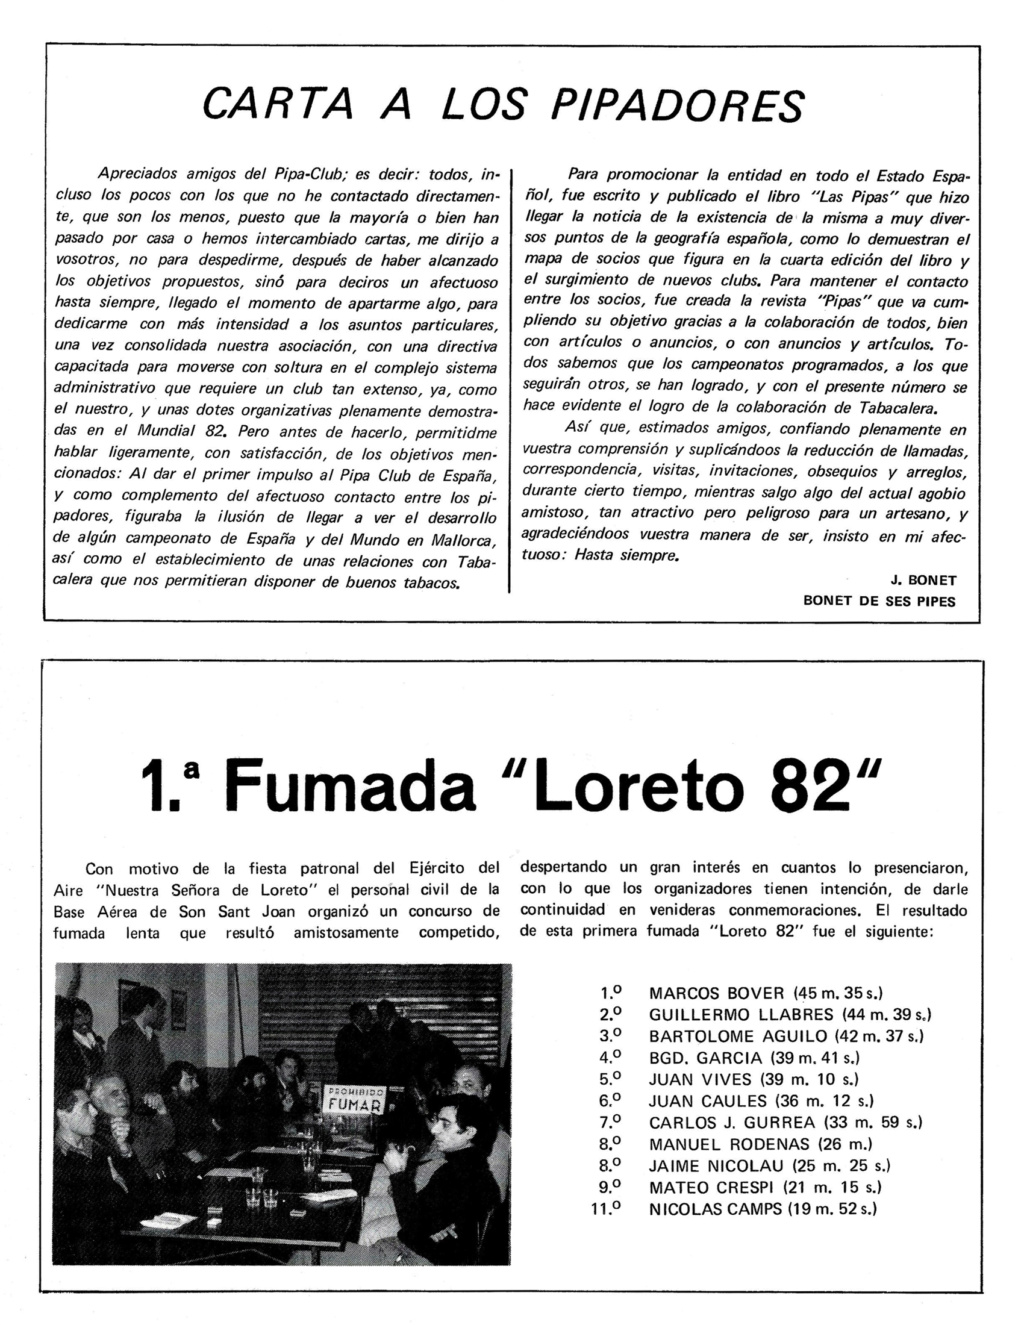 EL RINCON DE BONET - Página 13 12_0910